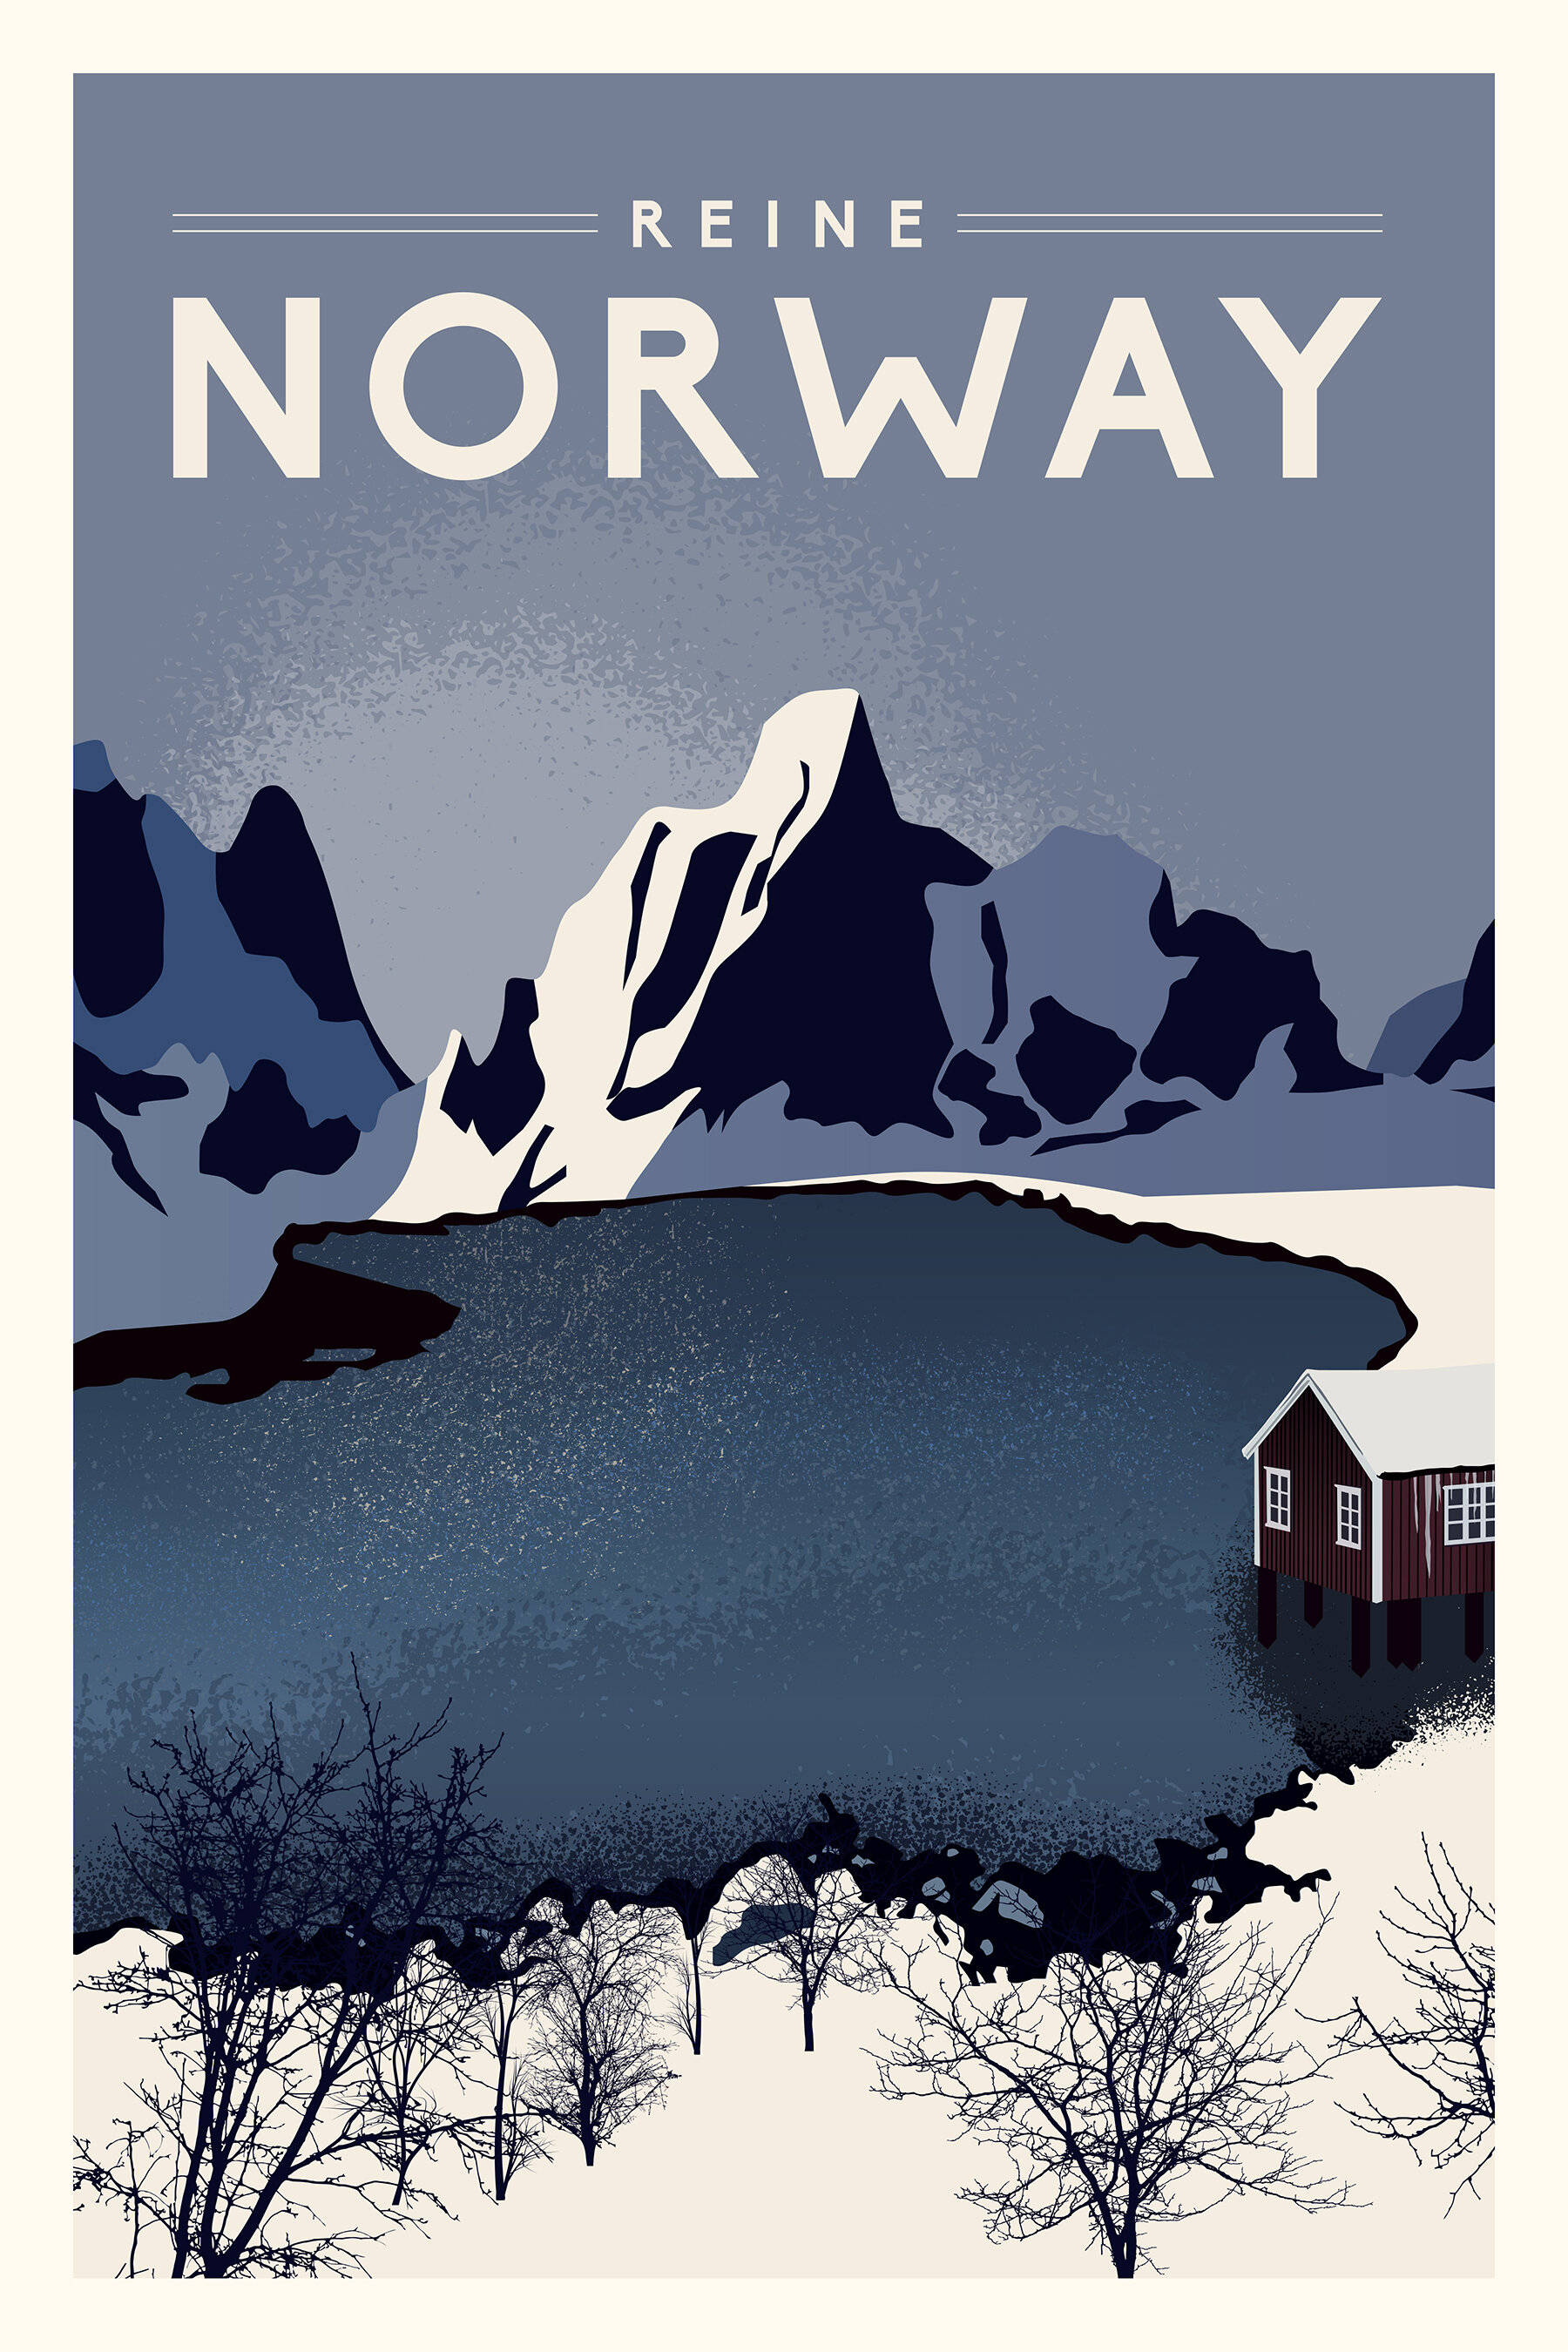 Norway_12x18.jpg